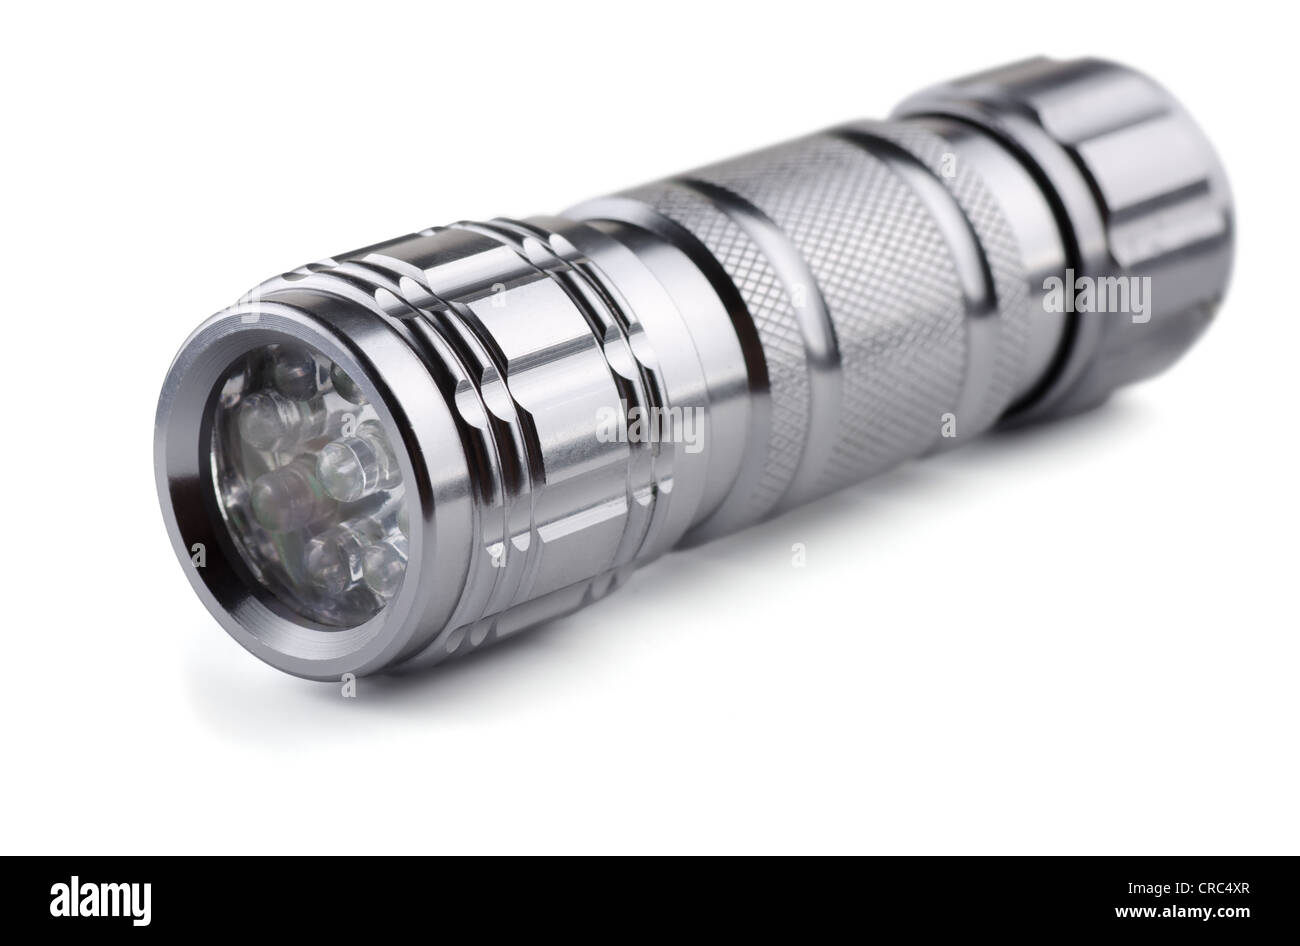 Tasche aus Metall led Taschenlampe isoliert auf weiss Stockfotografie -  Alamy